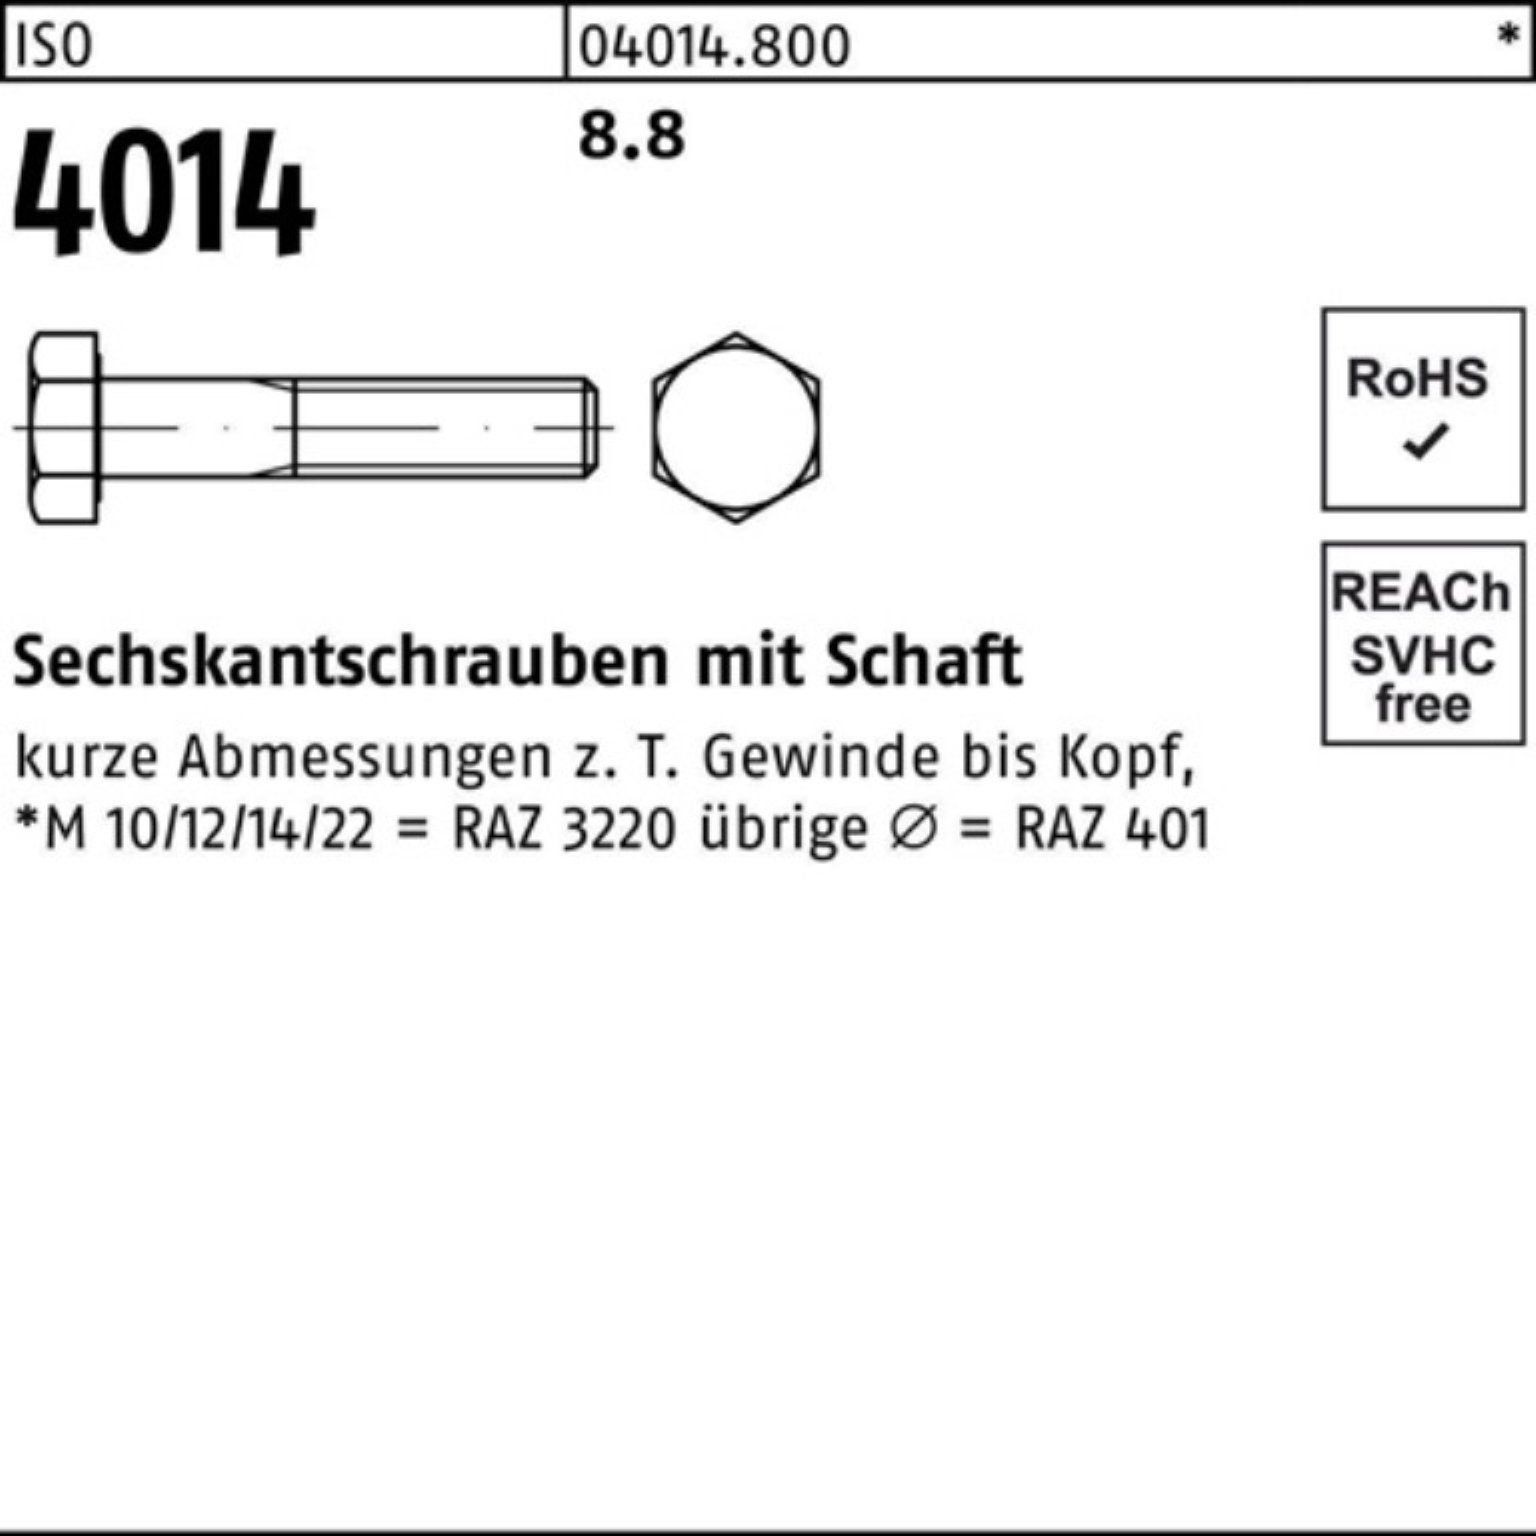 250 Bufab Stück Sechskantschraube 4014 100er ISO Schaft 8.8 100 M8x IS Pack Sechskantschraube